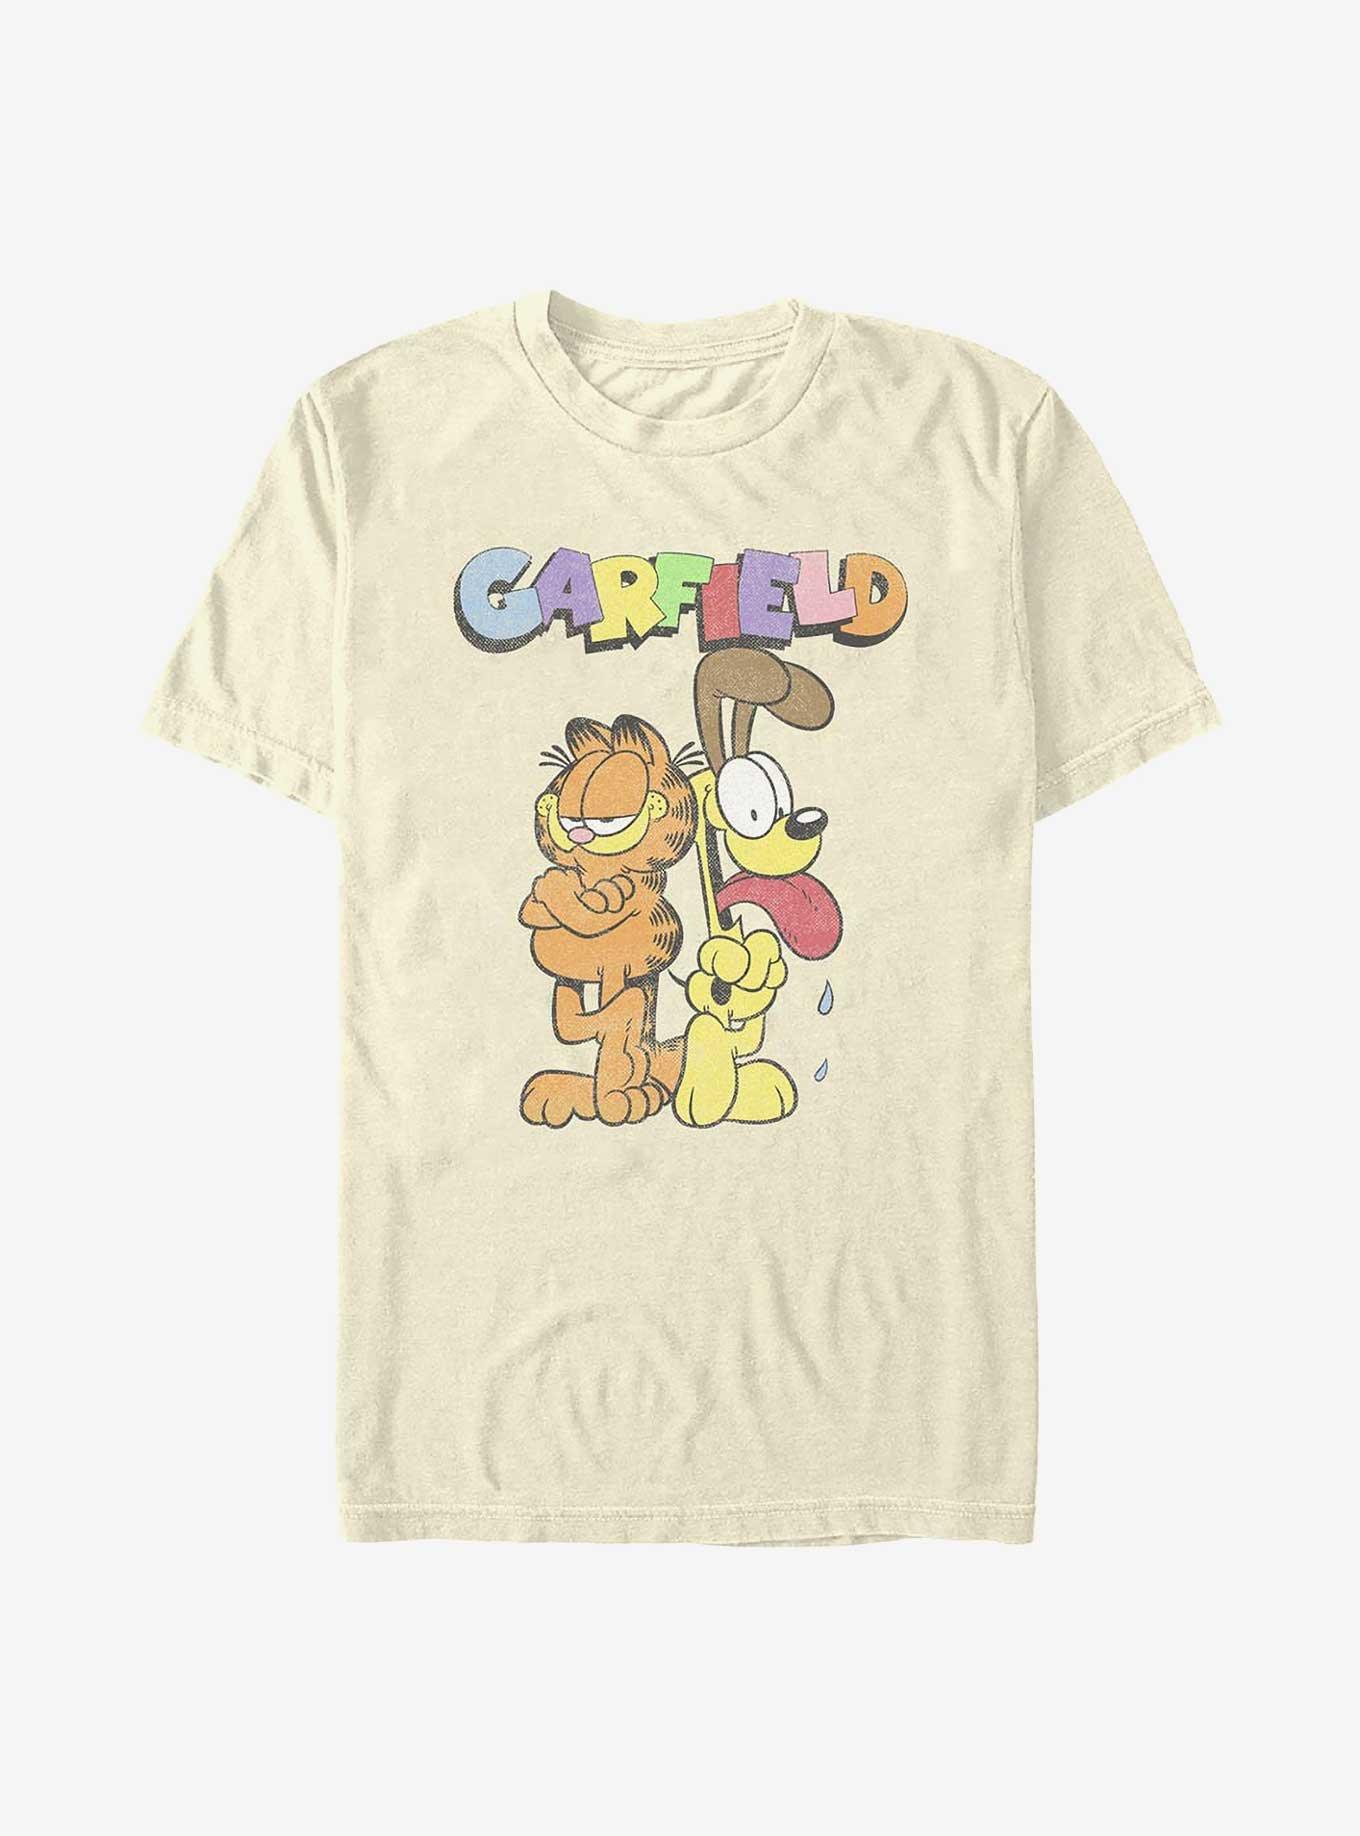 Garfield Garfield And Odie T-Shirt - BEIGETAN